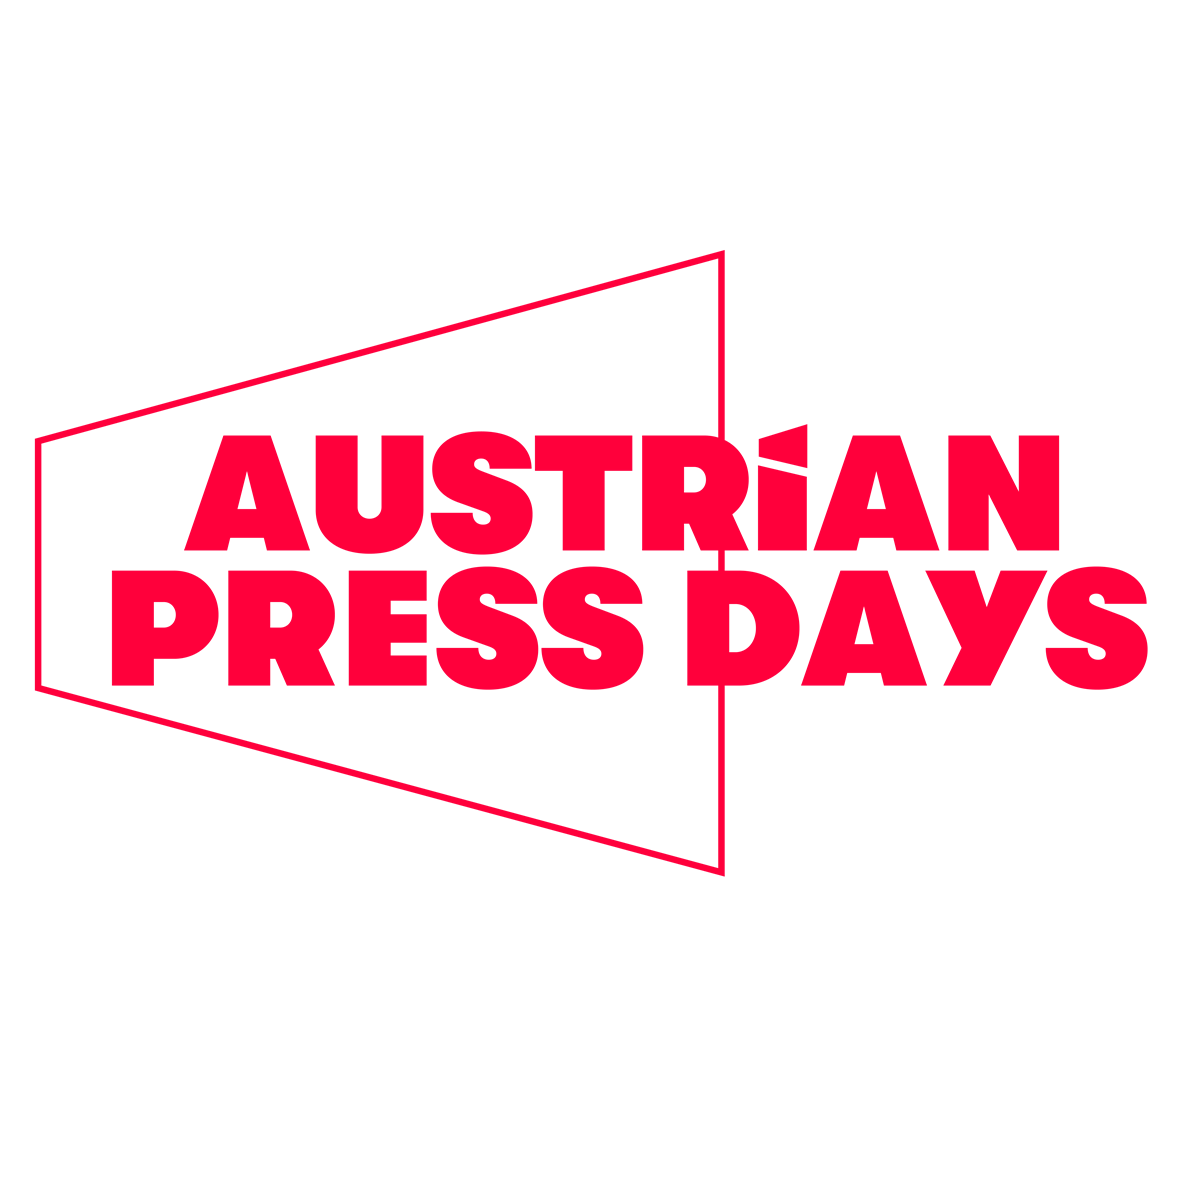 AUSTRIAN PRESS DAYS